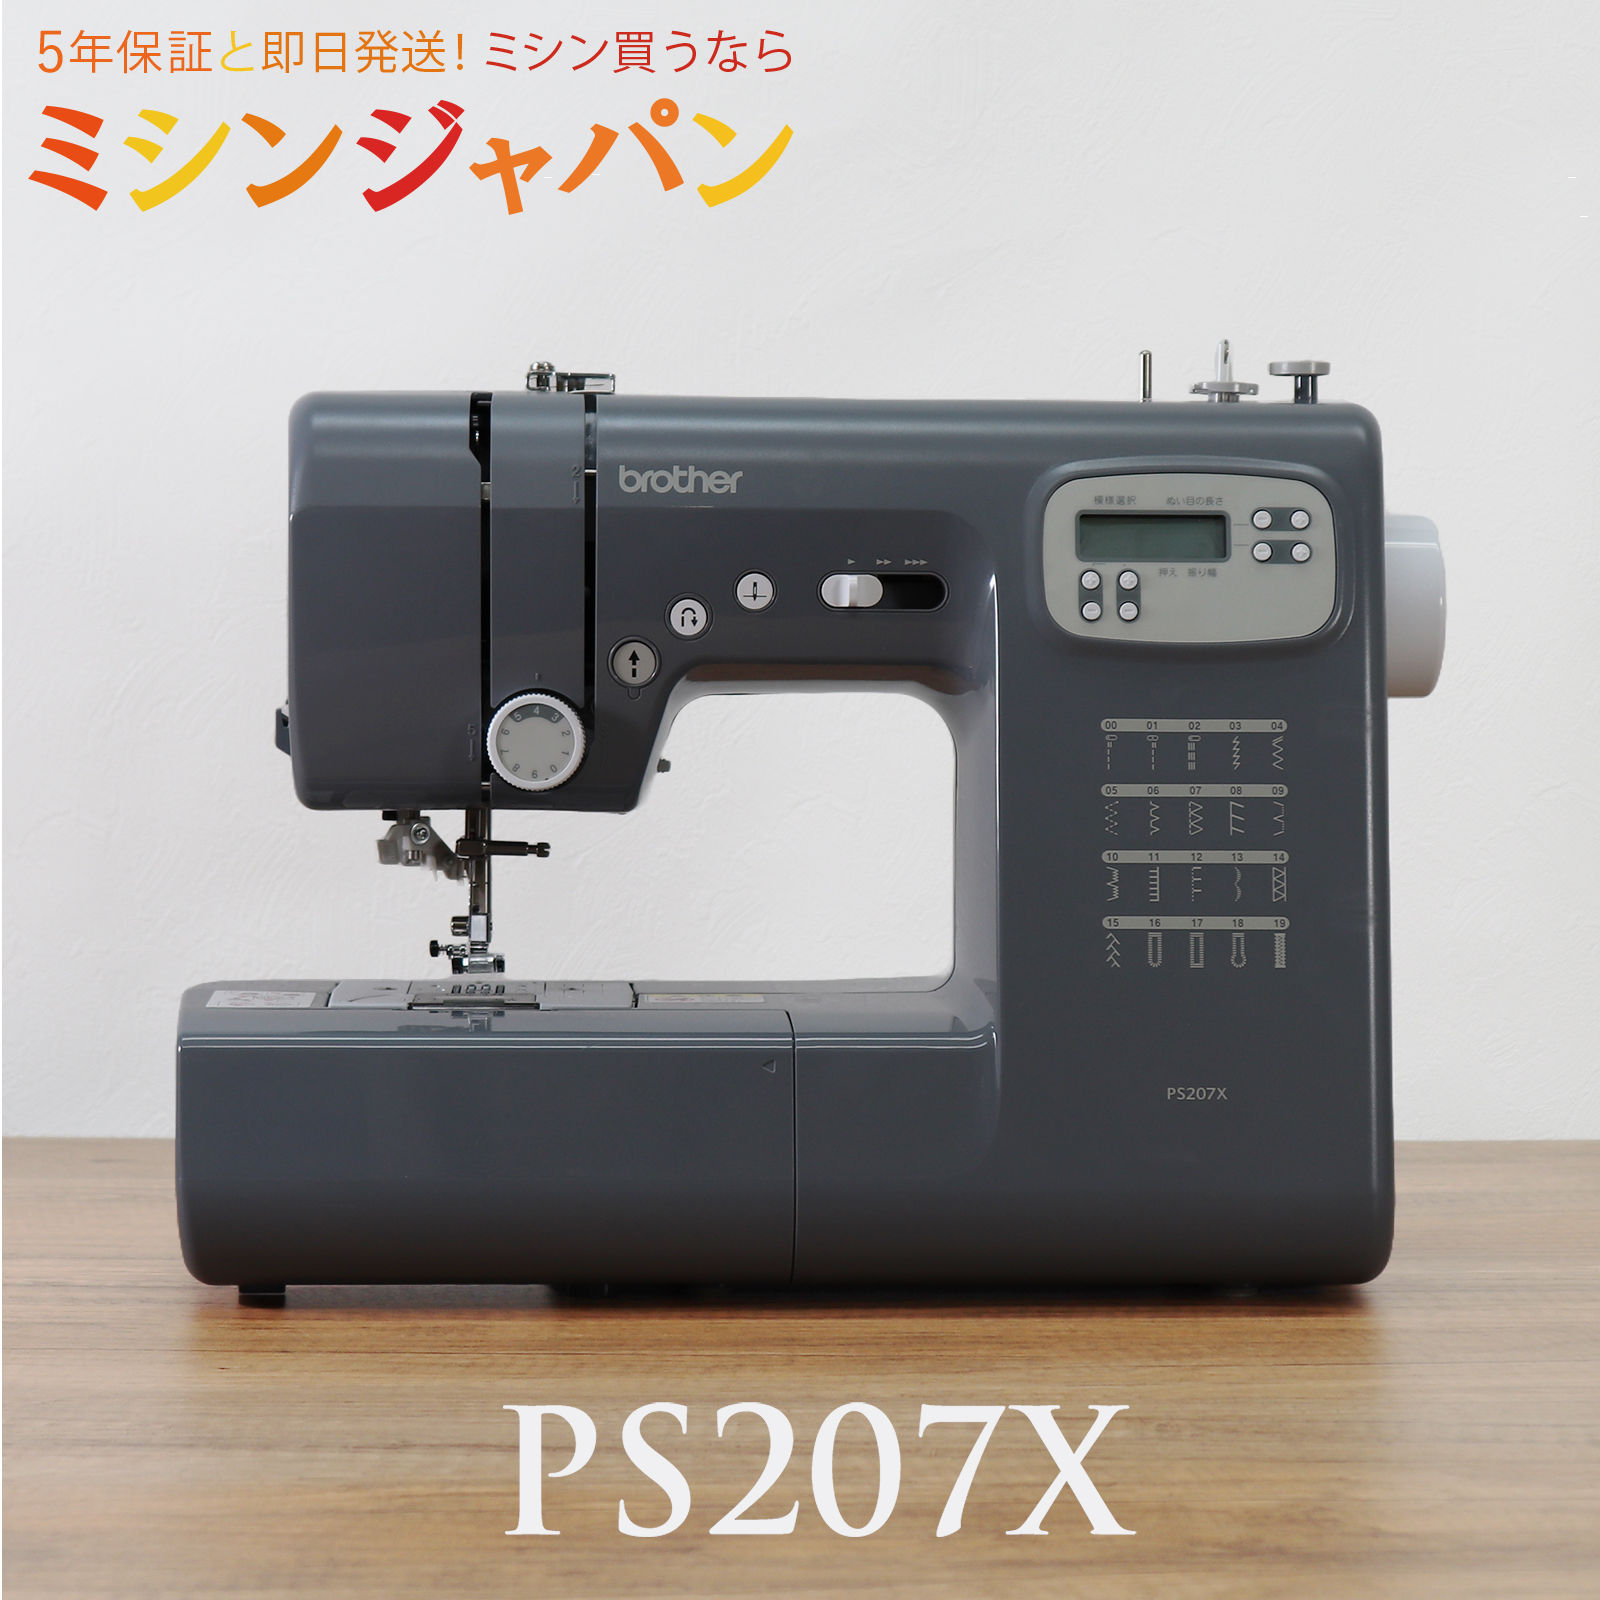 2530円CPあり☆／ PS207X ブラザー コンピューターミシン : 999-207xfc 